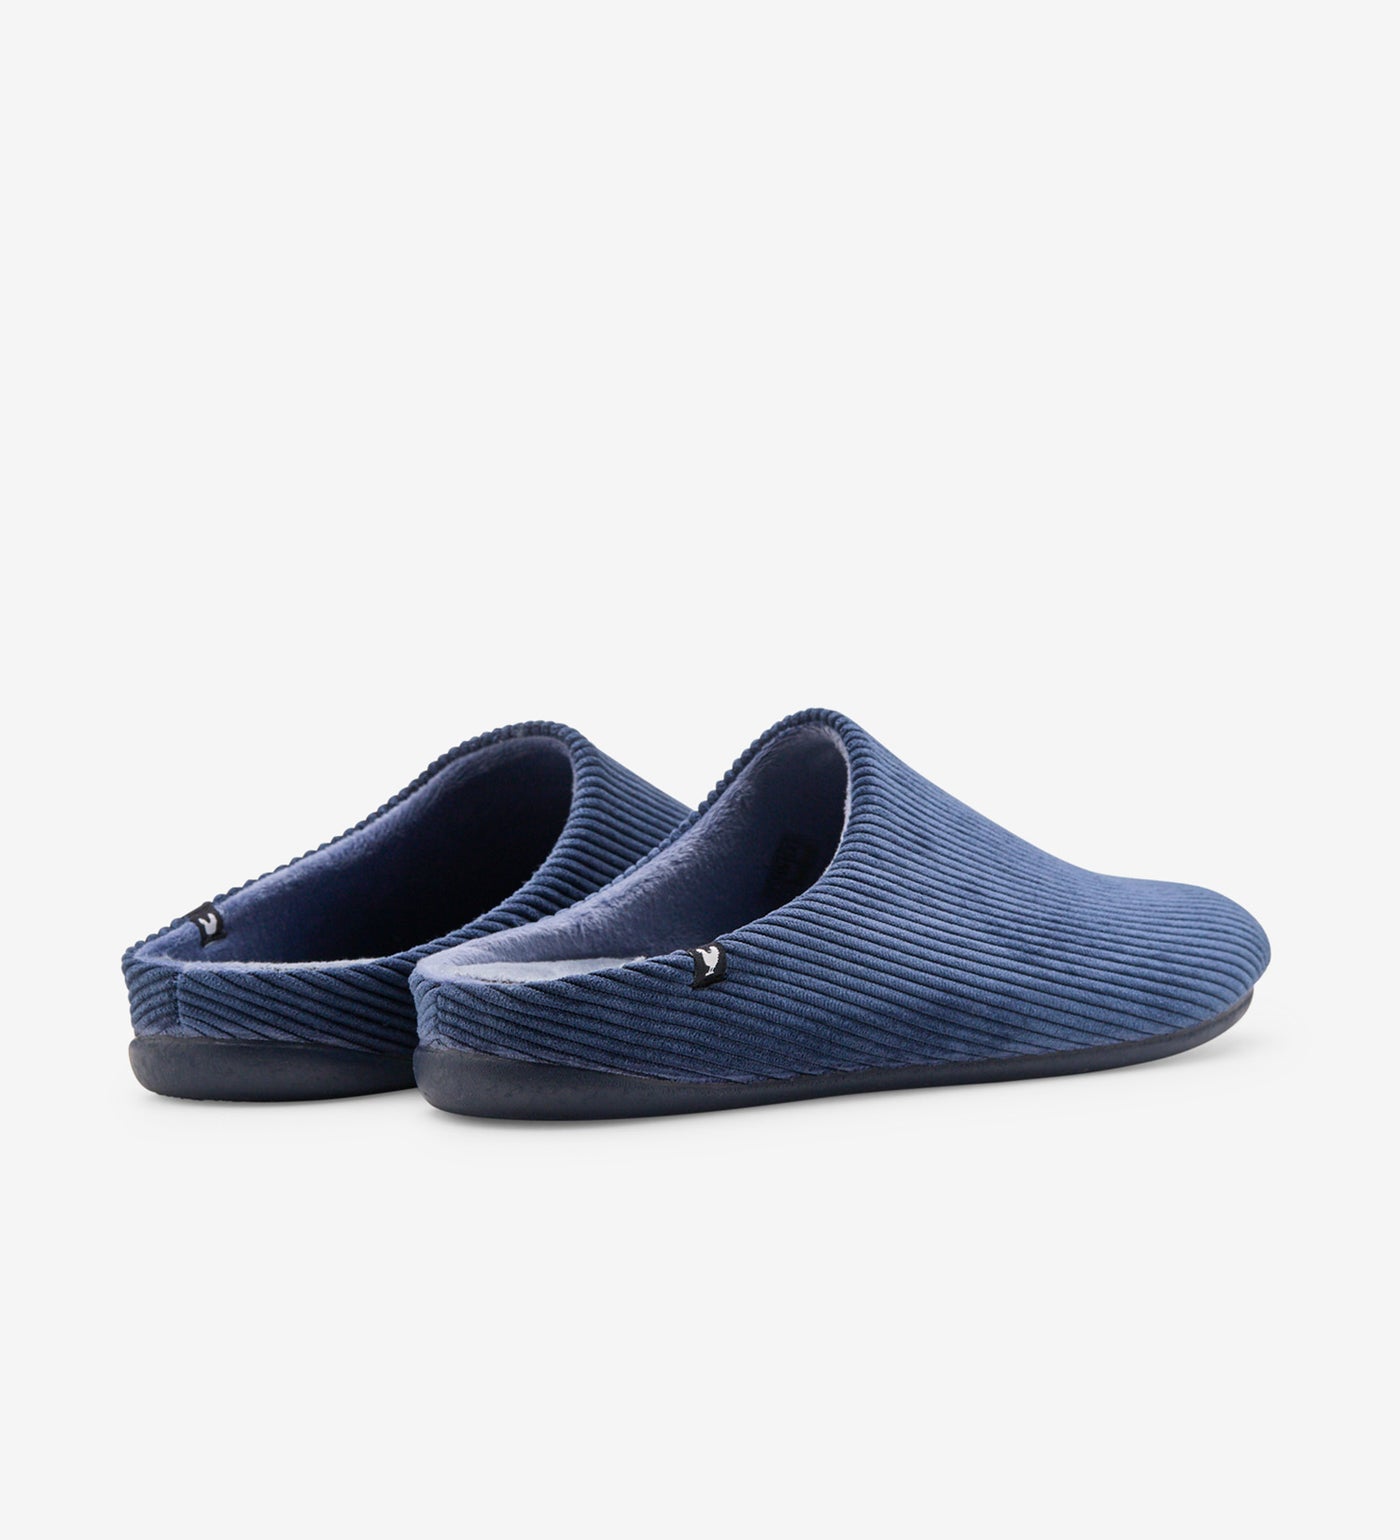 Pitas corduroy mule slippers